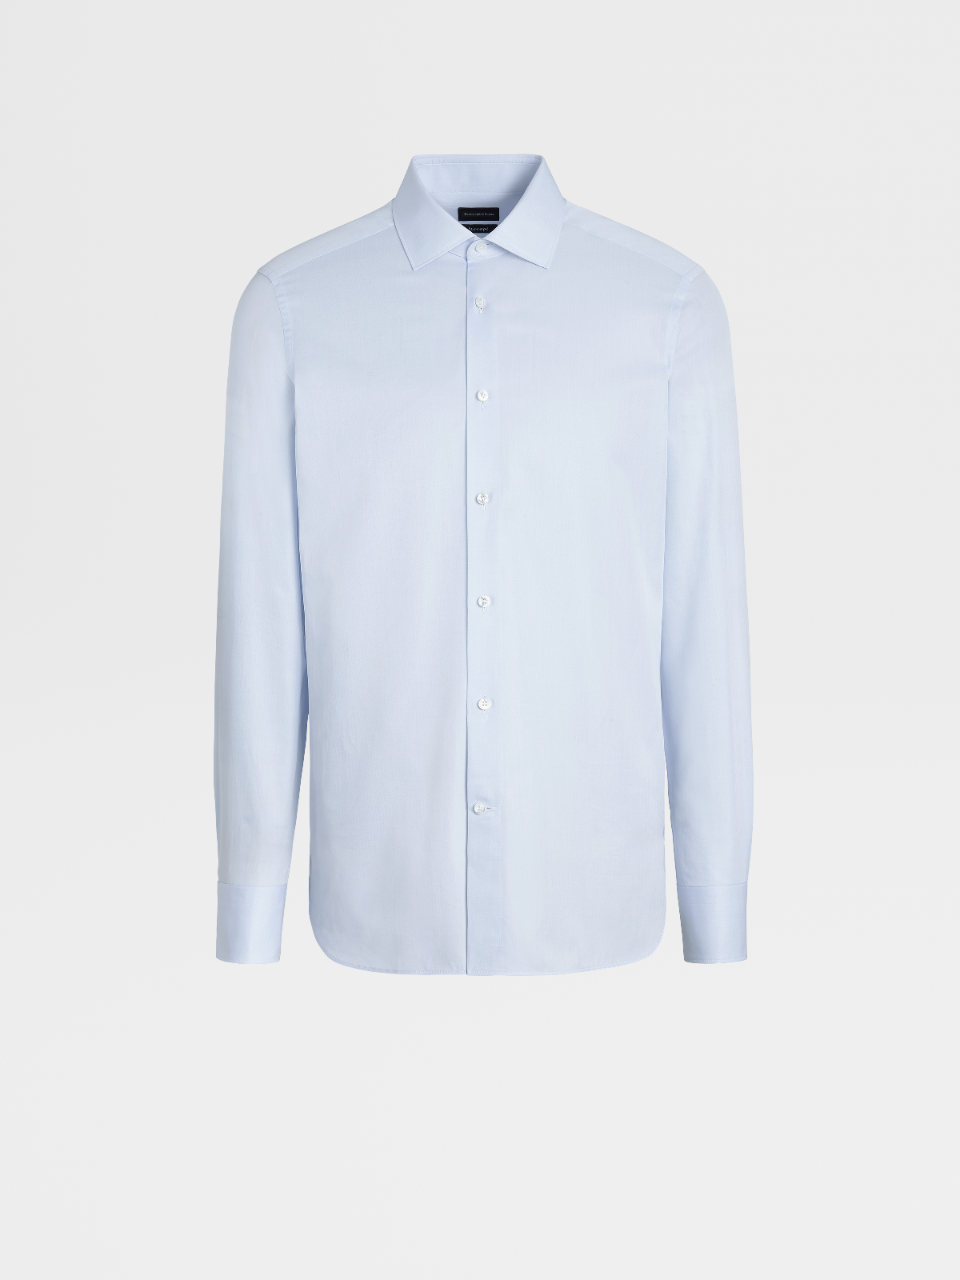 浅蓝色条纹 Trecapi 棉质精裁衬衫，Milano 合身版型